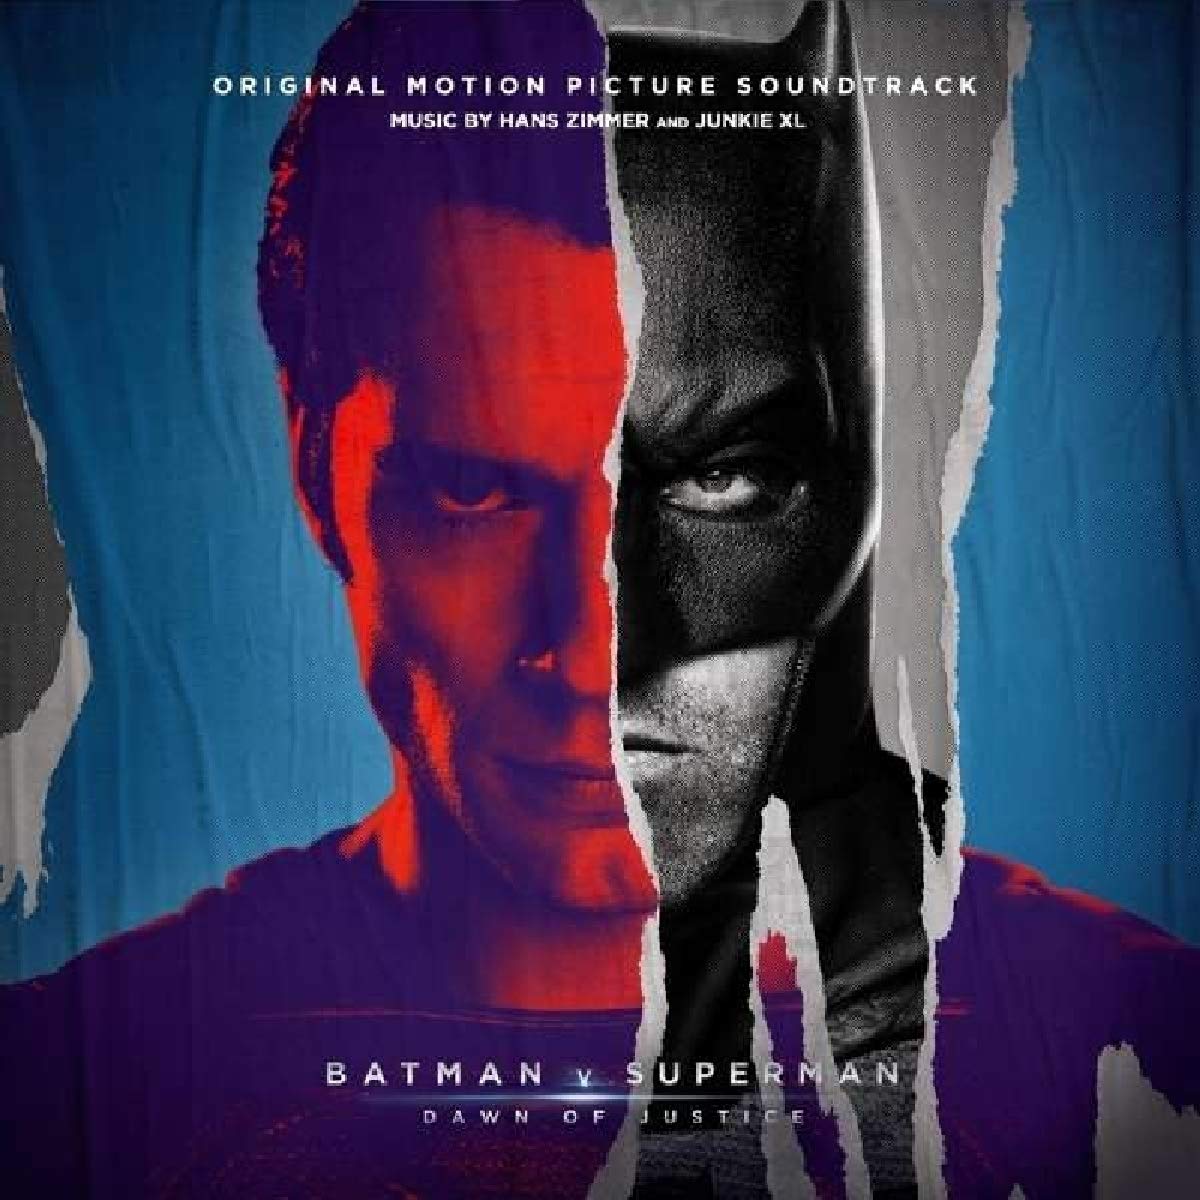 Batman V Superman: Dawn of Justice [Vinyl LP]